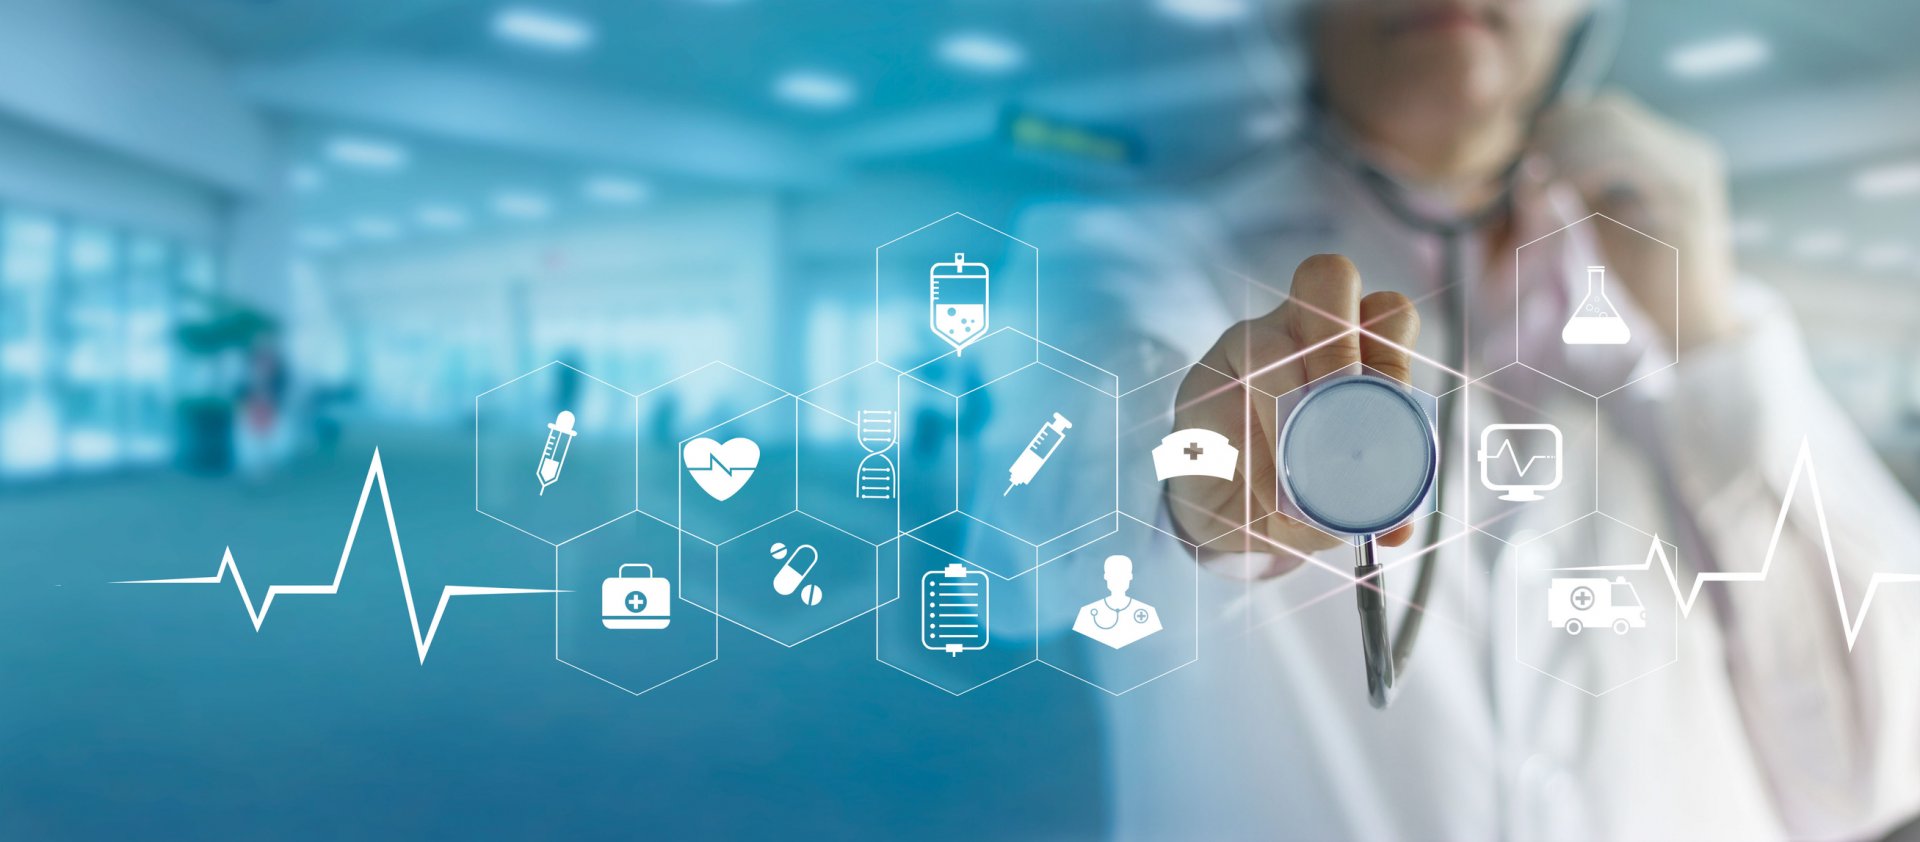 In diesem Artikel können Sie die Megatrends im Gesundheitswesen nachlesen. Durch die App Vivy können digitale Patientenakten bereitsgestellt werden, die einen Mehrwert für Ärzte, Krankenkassen und Patienten bringt.